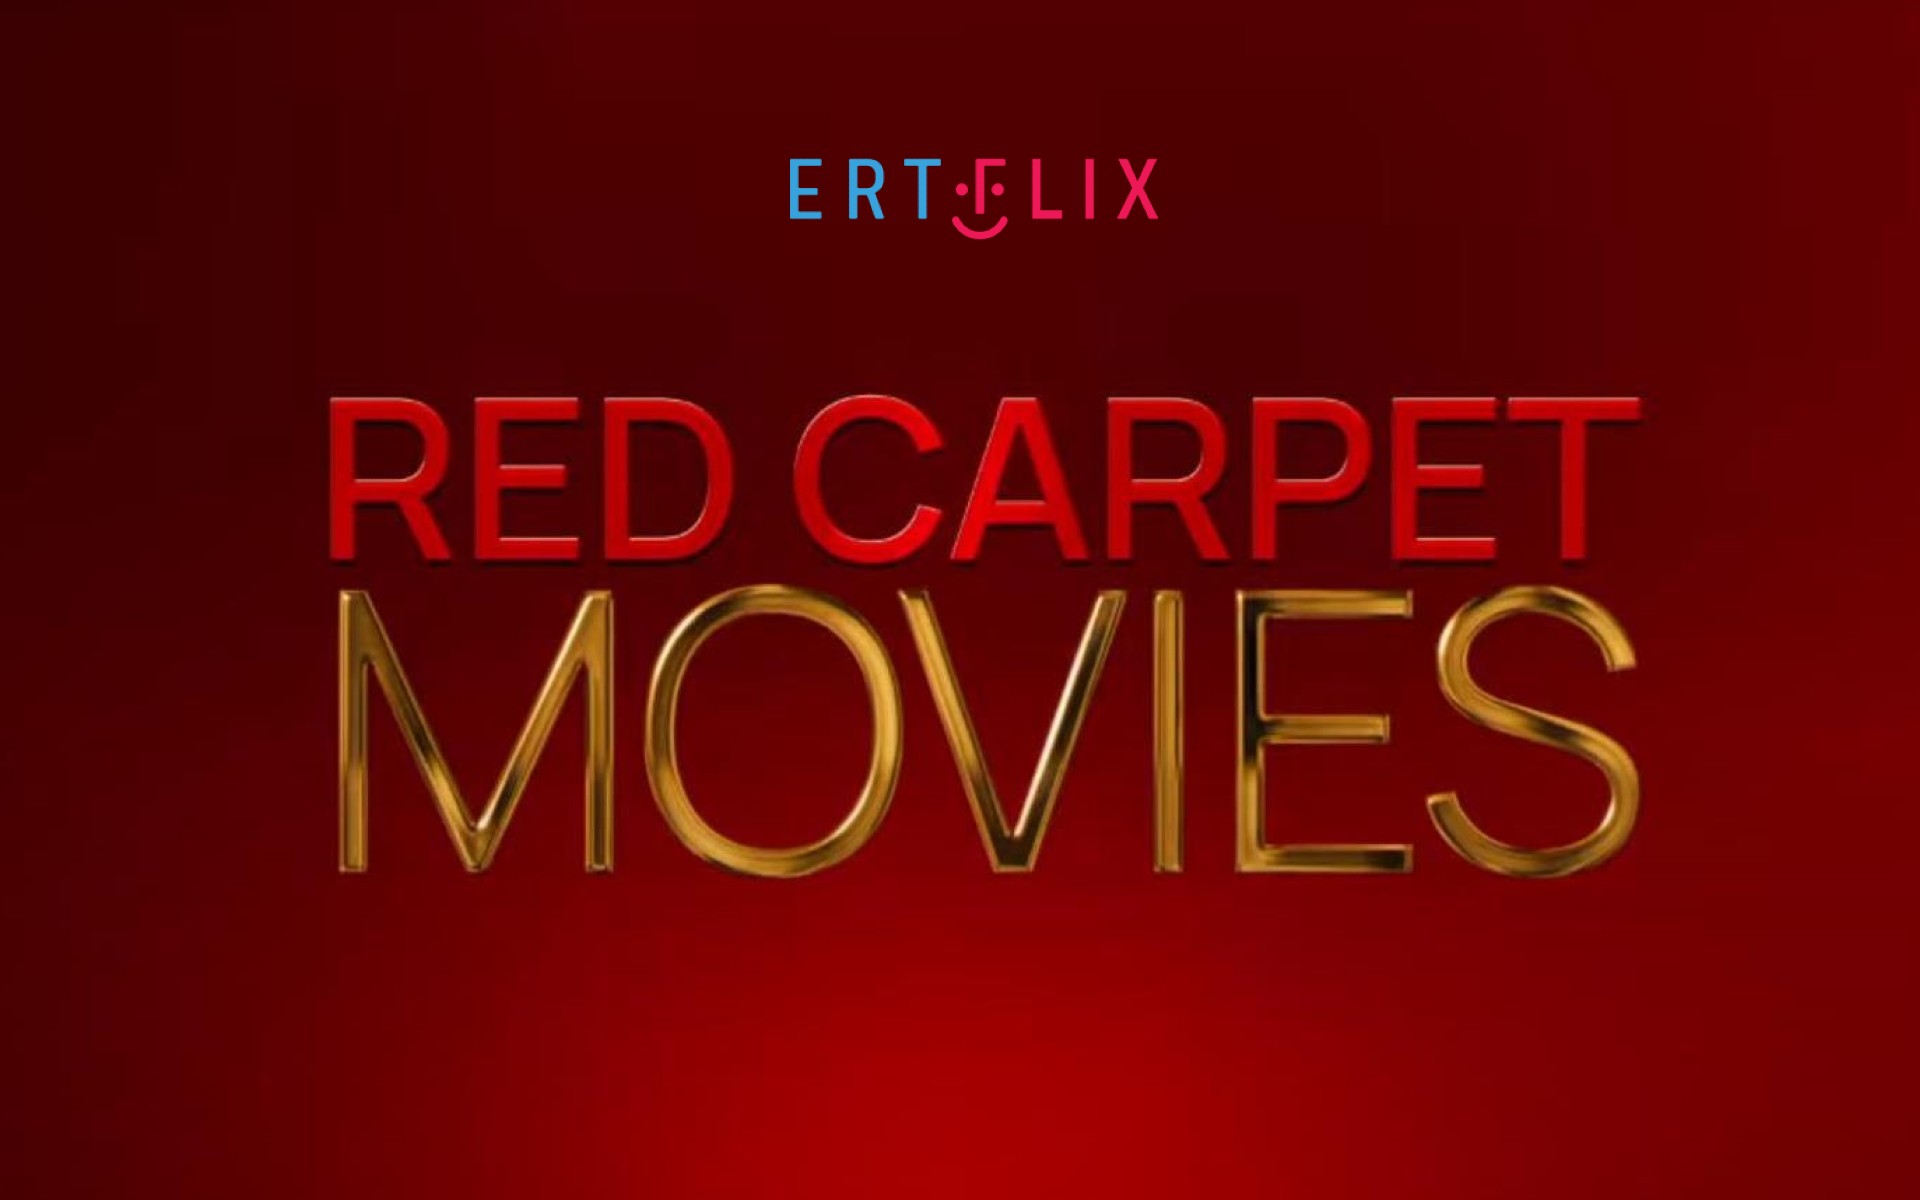 Οσκαρικές ταινίες στη νέα κατηγορία Red Carpet Movies του Ertflix © Printscreen Youtube / Ertflix / powergame.gr